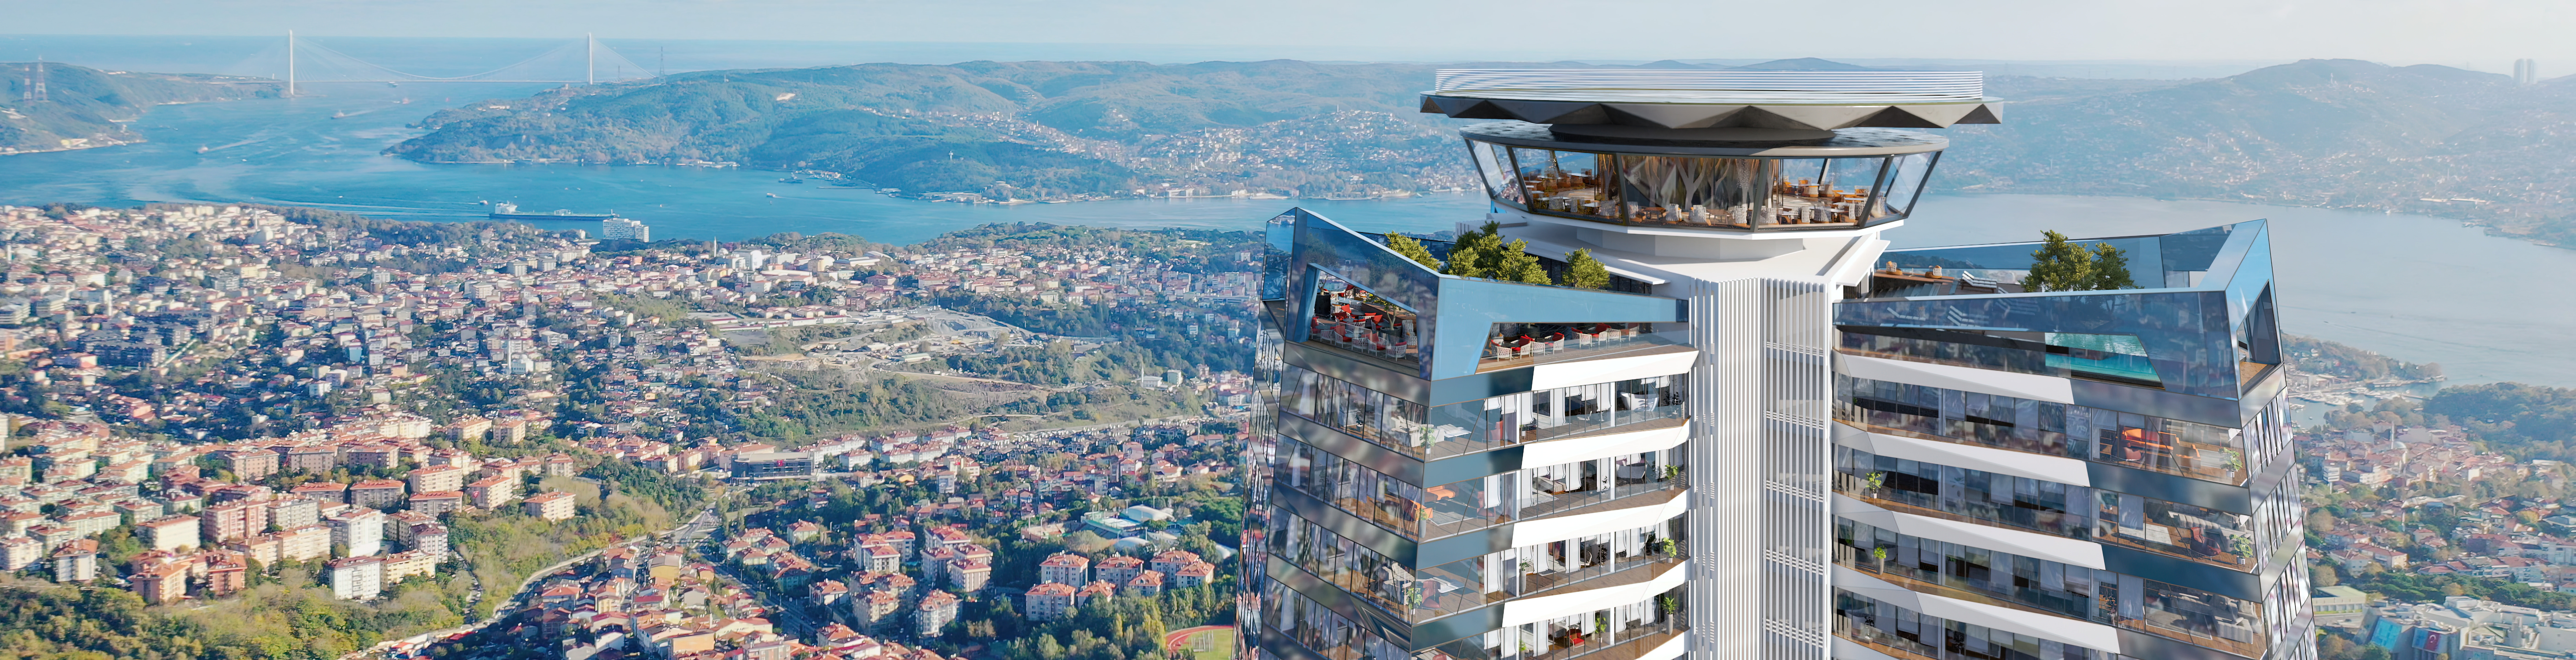 Продажа элитных квартир и офисов в районе Маслак, Стамбул с видами на Босфор